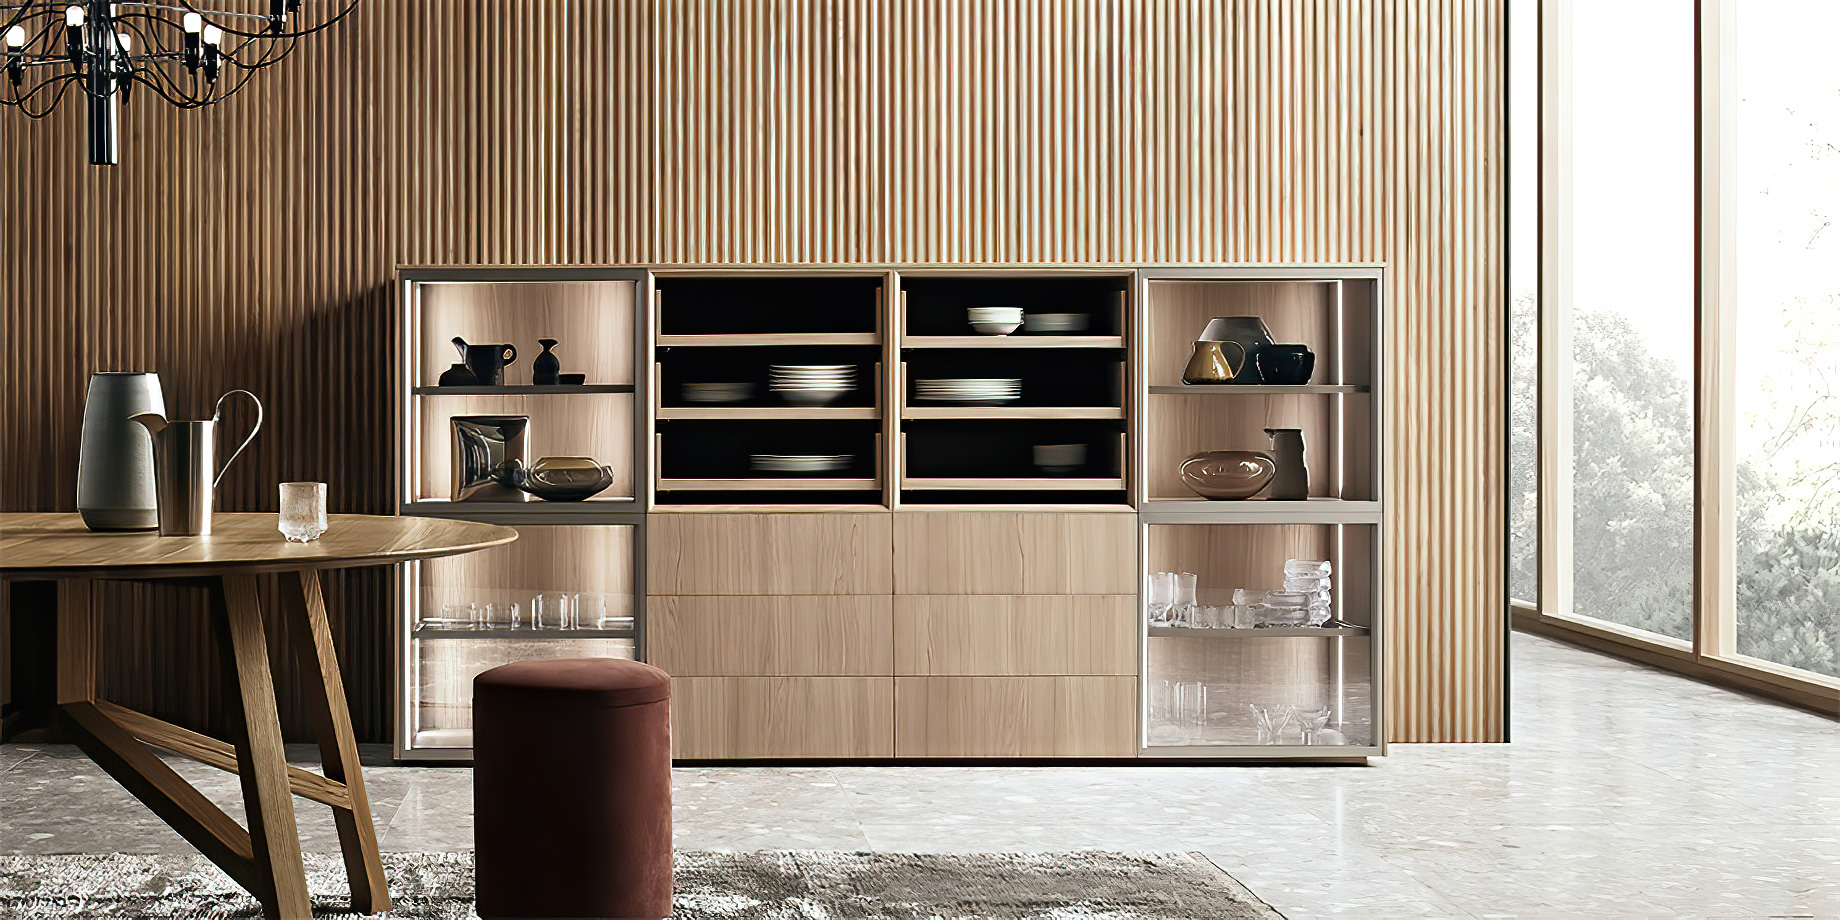 K-lab Contemporary Kitchen Ernestomeda Italy – Giuseppe Bavuso – K-lab Vetrina Slide Cabinet